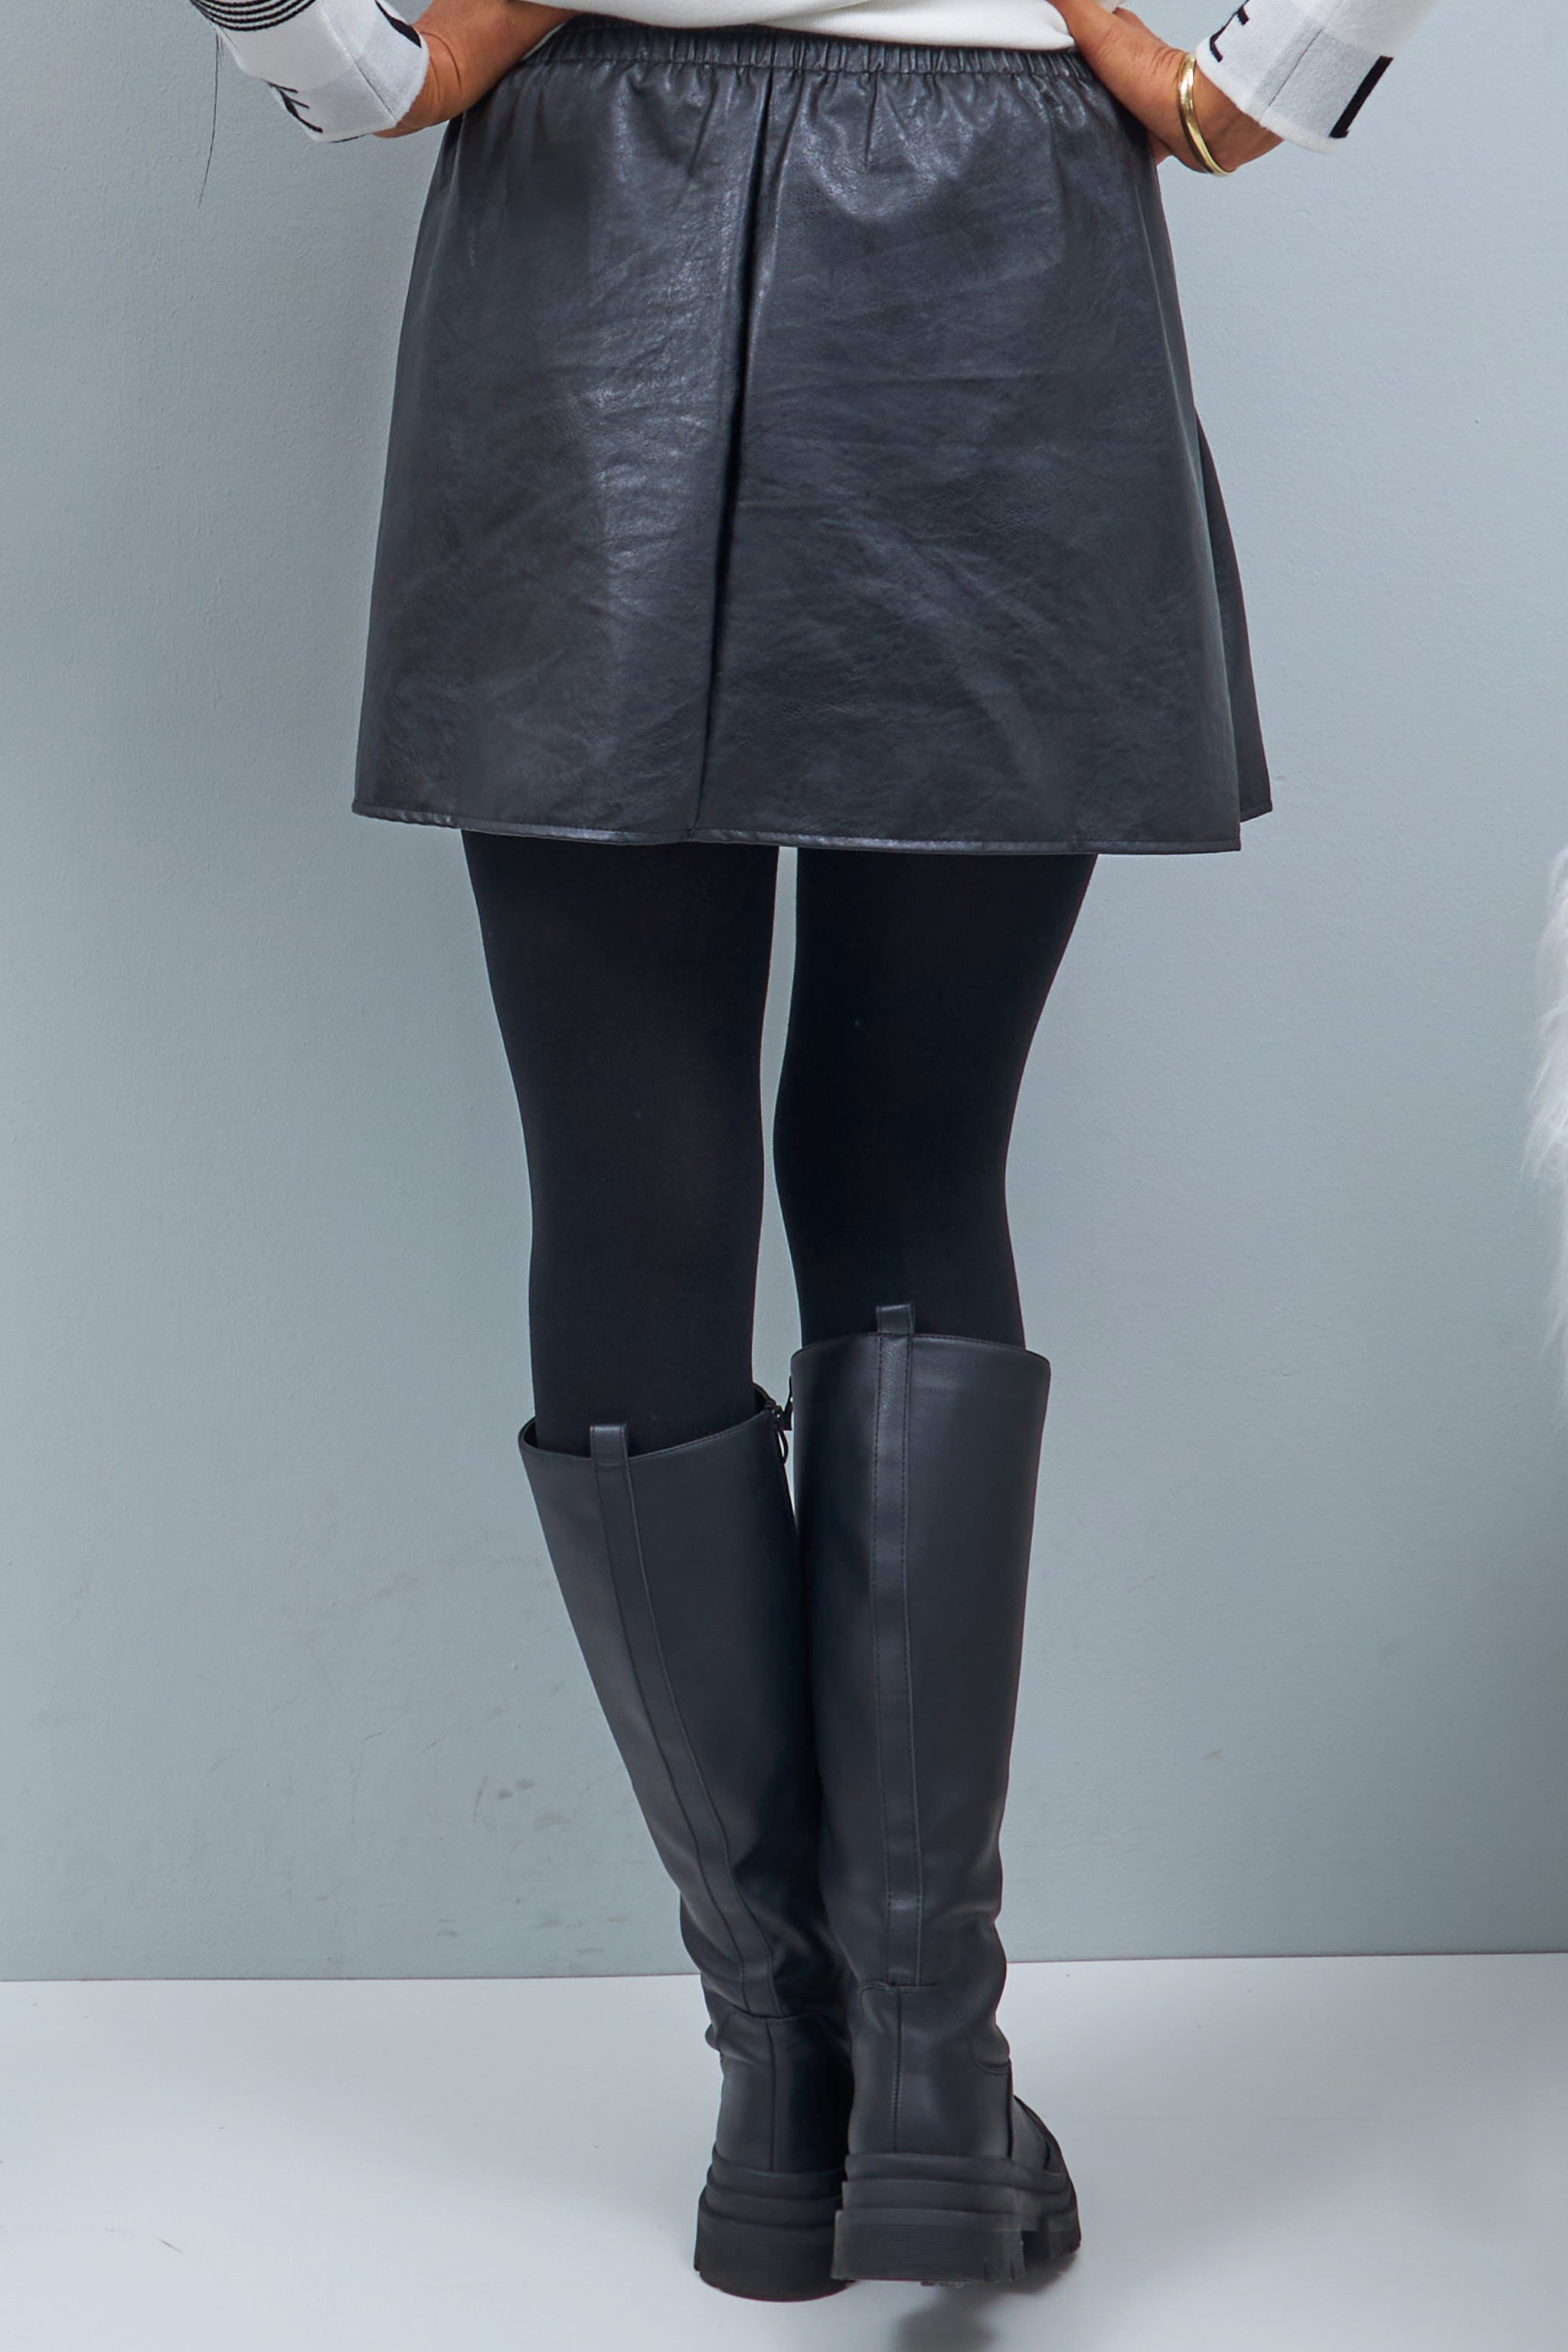 Short leather skirt, black